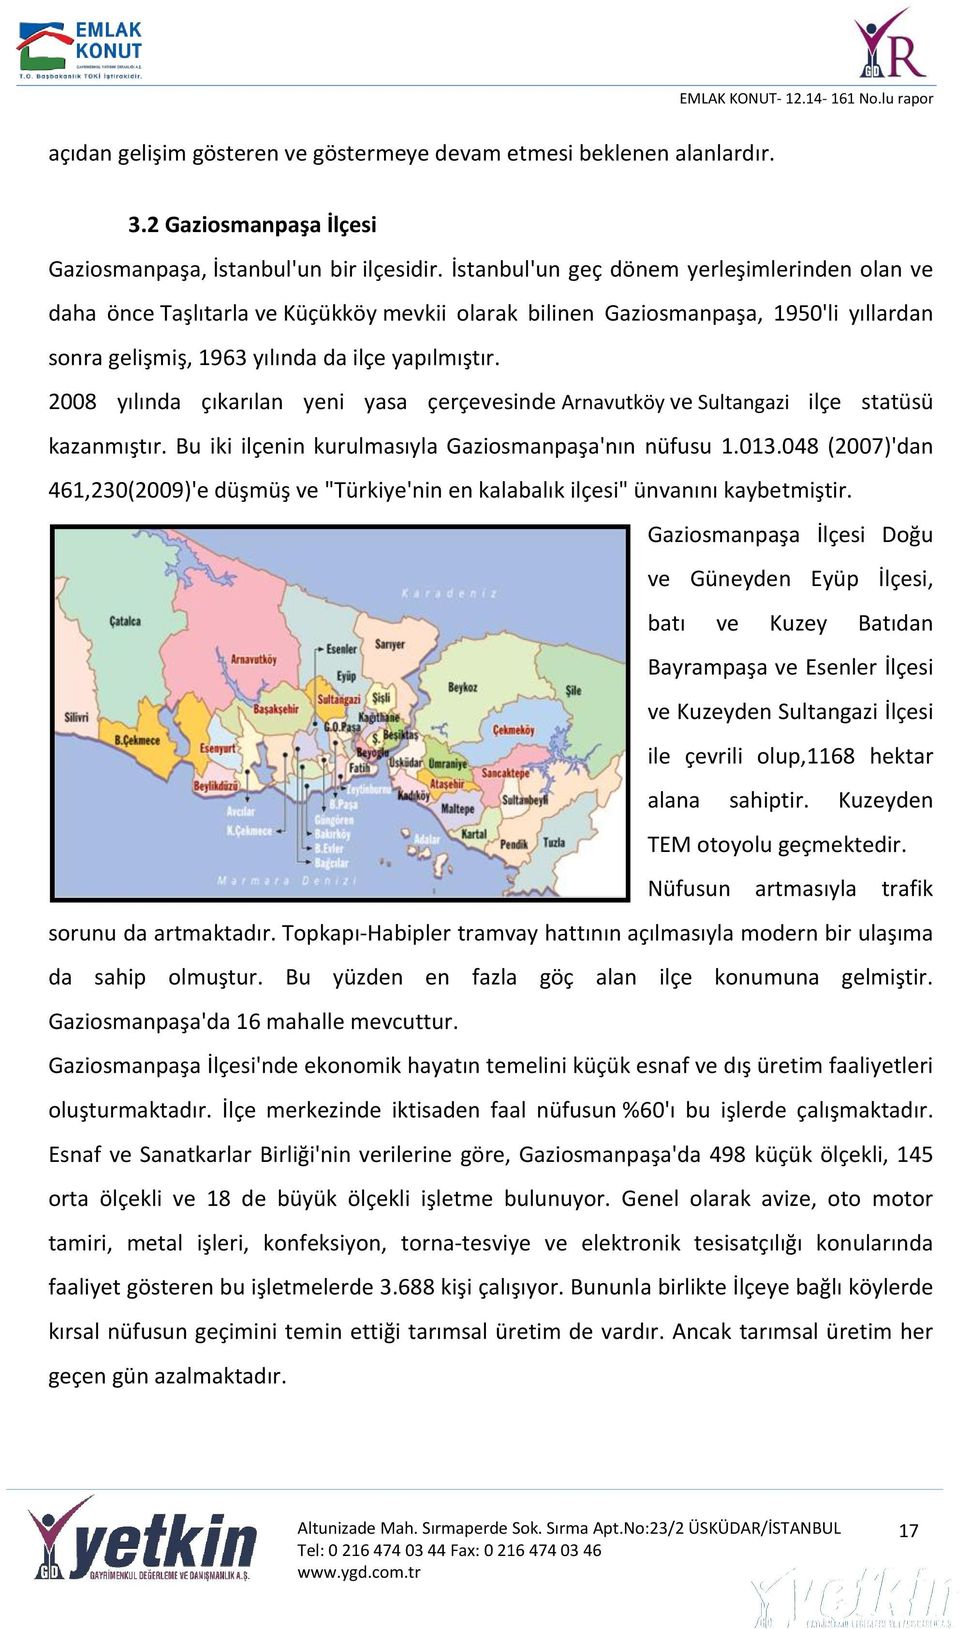 2008 yılında çıkarılan yeni yasa çerçevesinde Arnavutköy ve Sultangazi ilçe statüsü kazanmıştır. Bu iki ilçenin kurulmasıyla Gaziosmanpaşa'nın nüfusu 1.013.